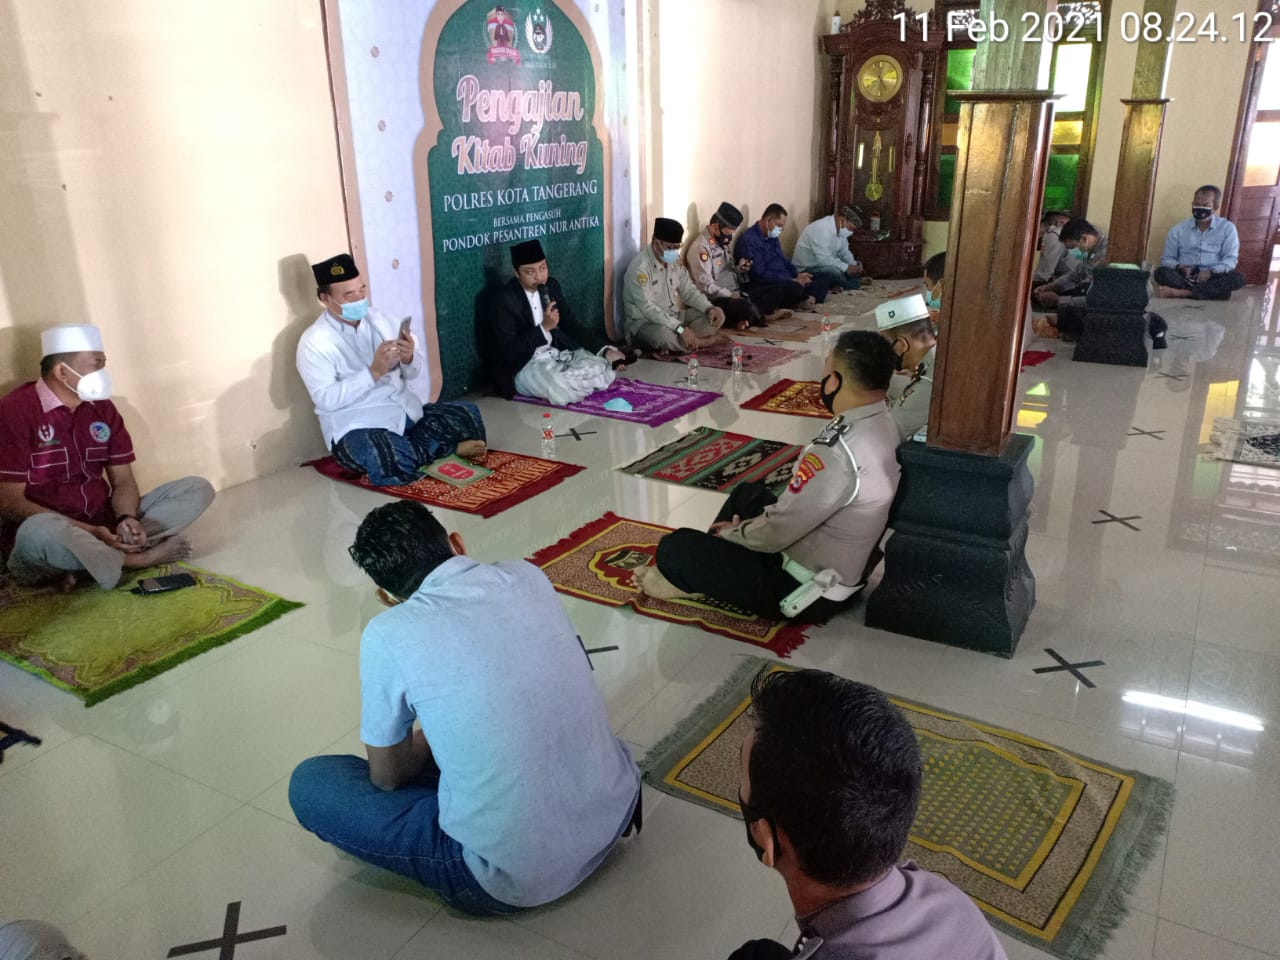 personel Polresta Tangerang di Masjid Al-Latif Polresta Tangerang Polda Banten, Kamis (11/2/2021)